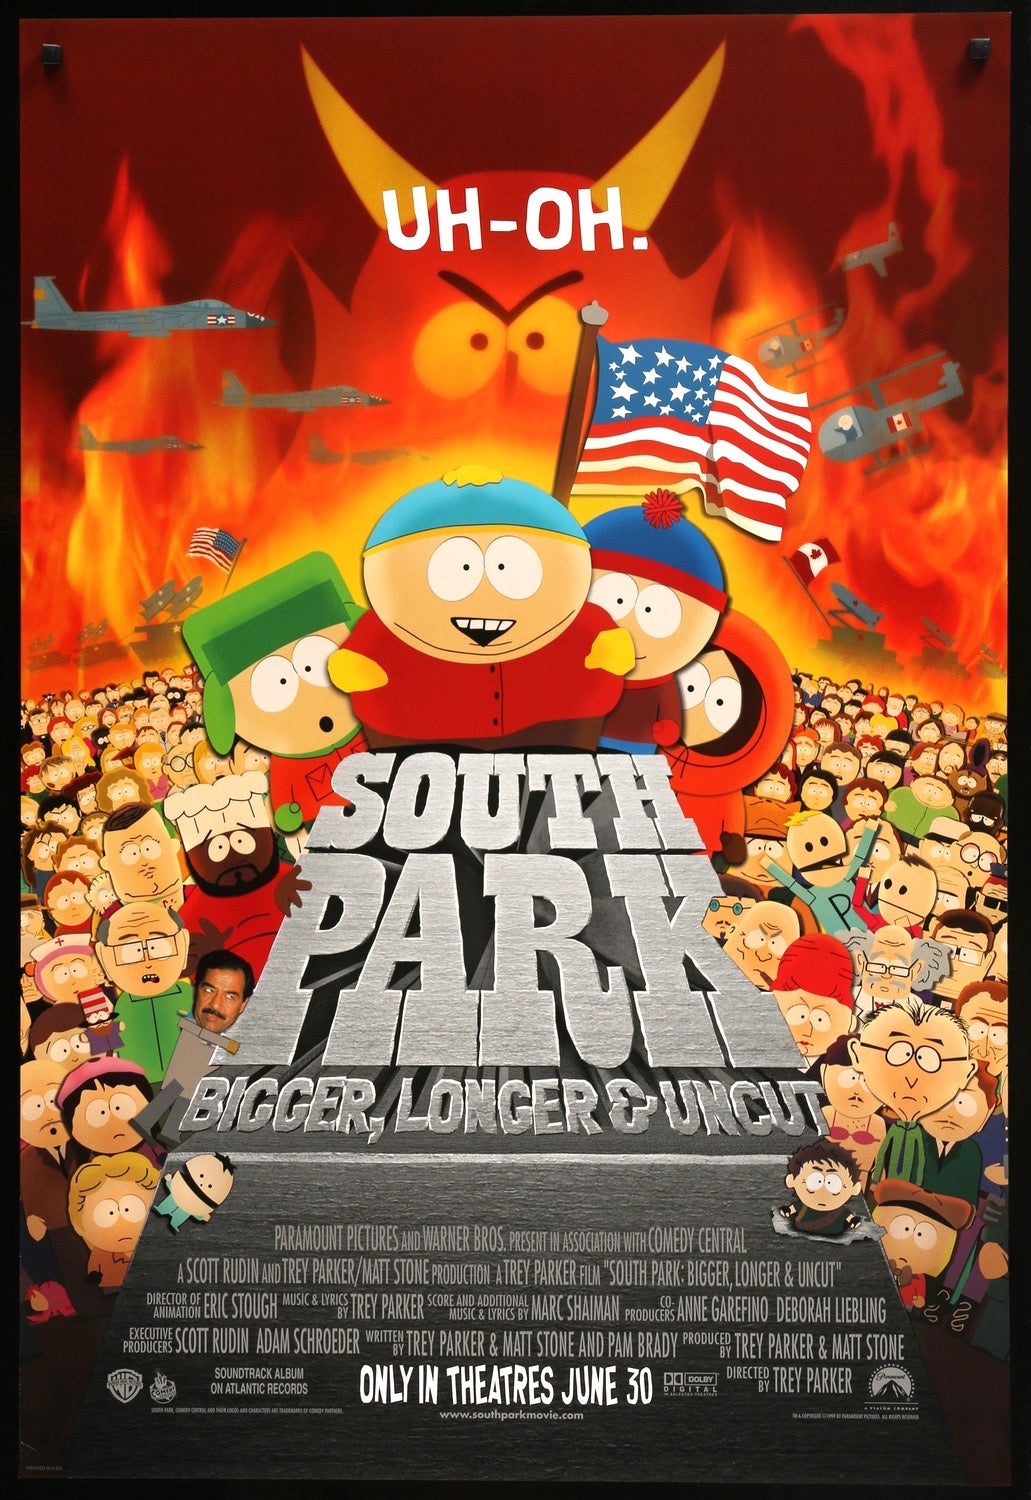 South Park: Bigger, Longer and Uncut (1999) original movie poster for sale at Original Film Art